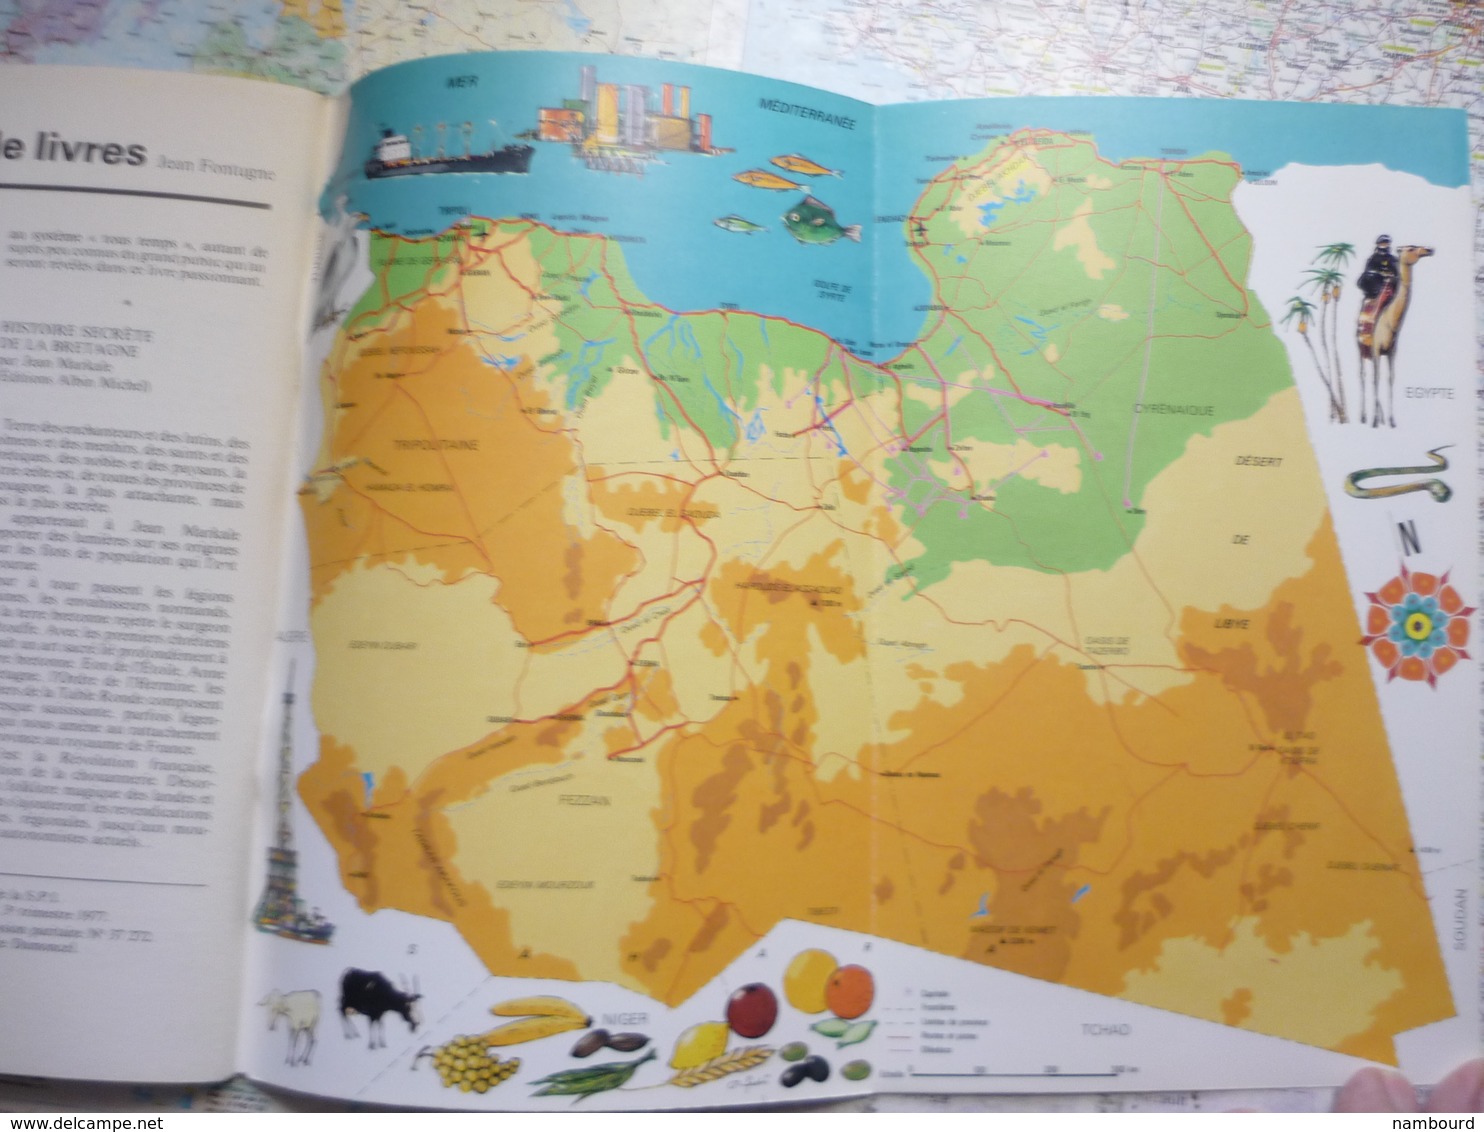 Tour du Monde Geographia  Voyage en Inde / L'Ile de Pâques / La République arabe libyenne N°216 Septembre 1977